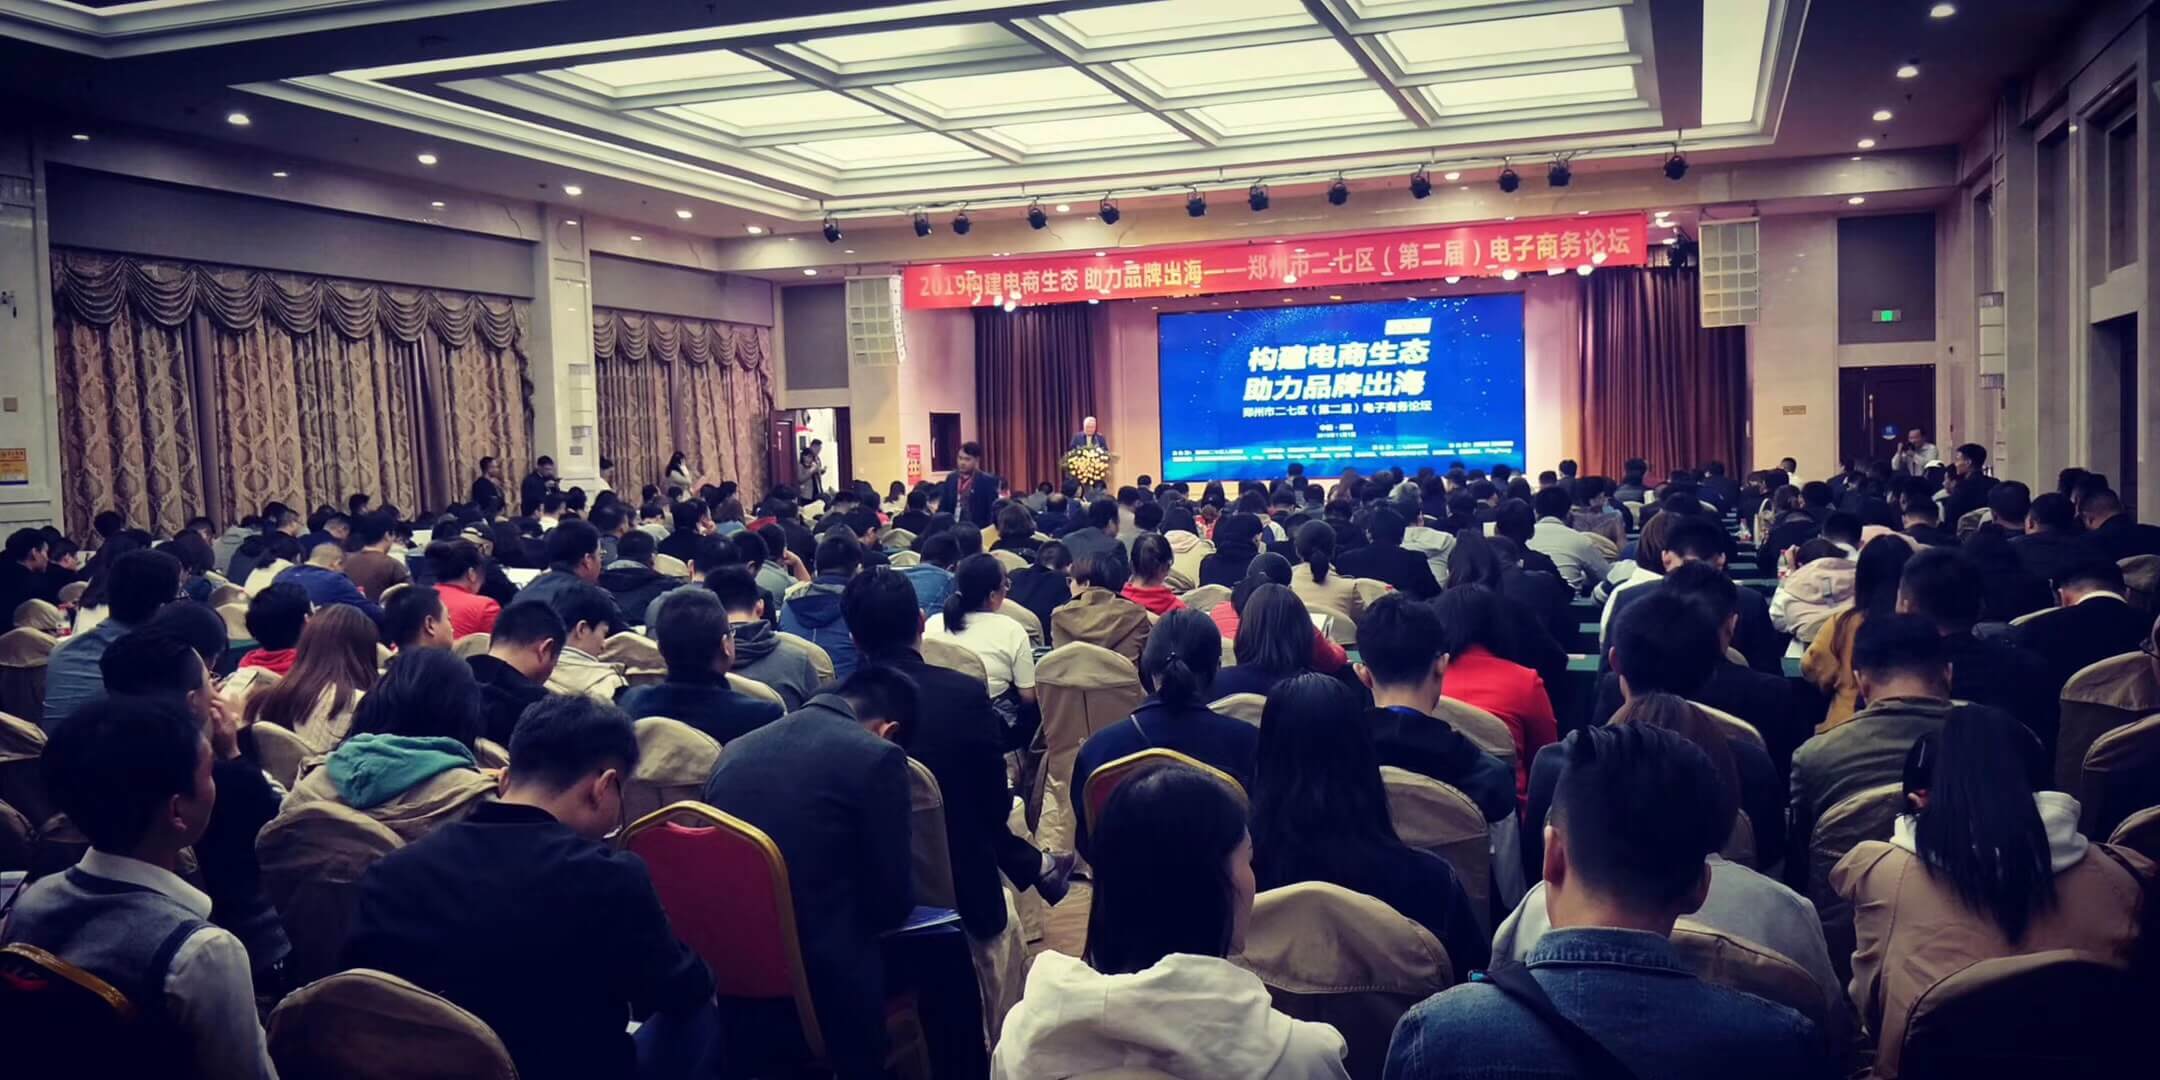 人数爆满，掌声雷动……郑州二七区第二届电子商务论坛圆满成功